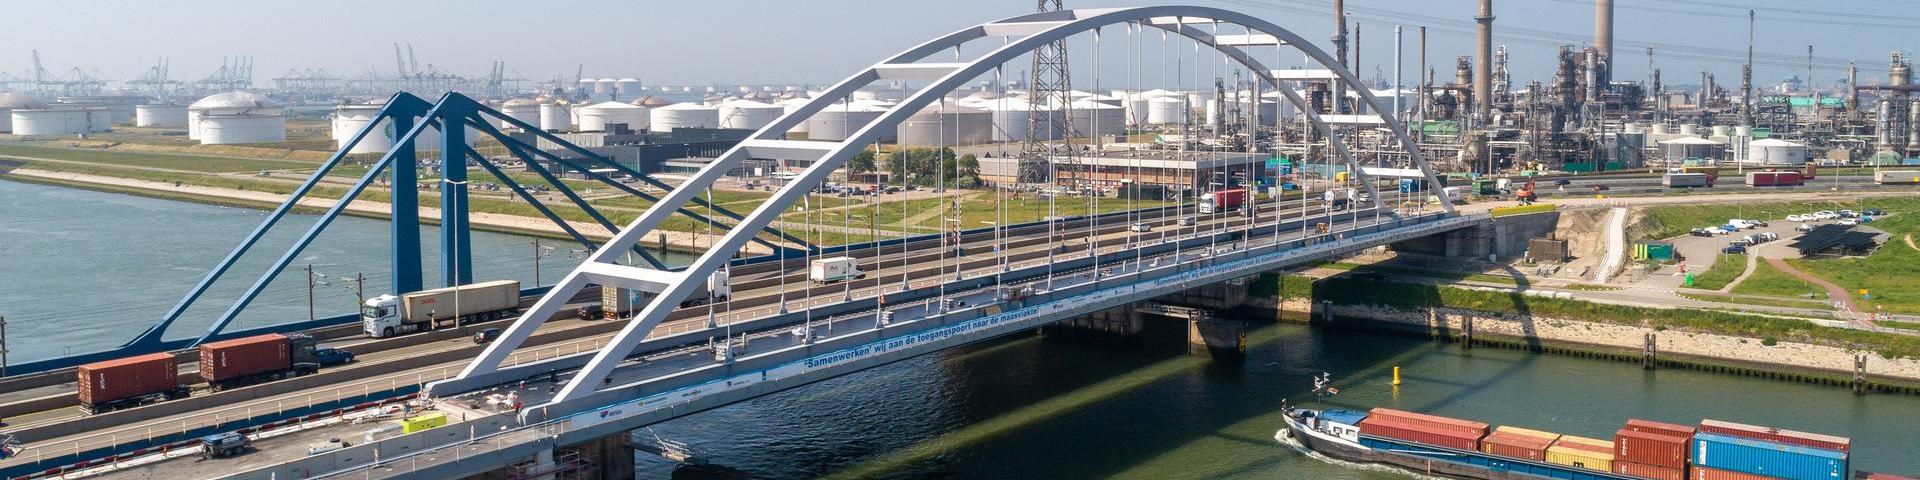 In mei 2021 is de tijdelijke Suurhoffbrug naast de bestaande Suurhoffbrug geplaatst. De Suurhoffbrug is de toegangspoort tot de Maasvlakte. 